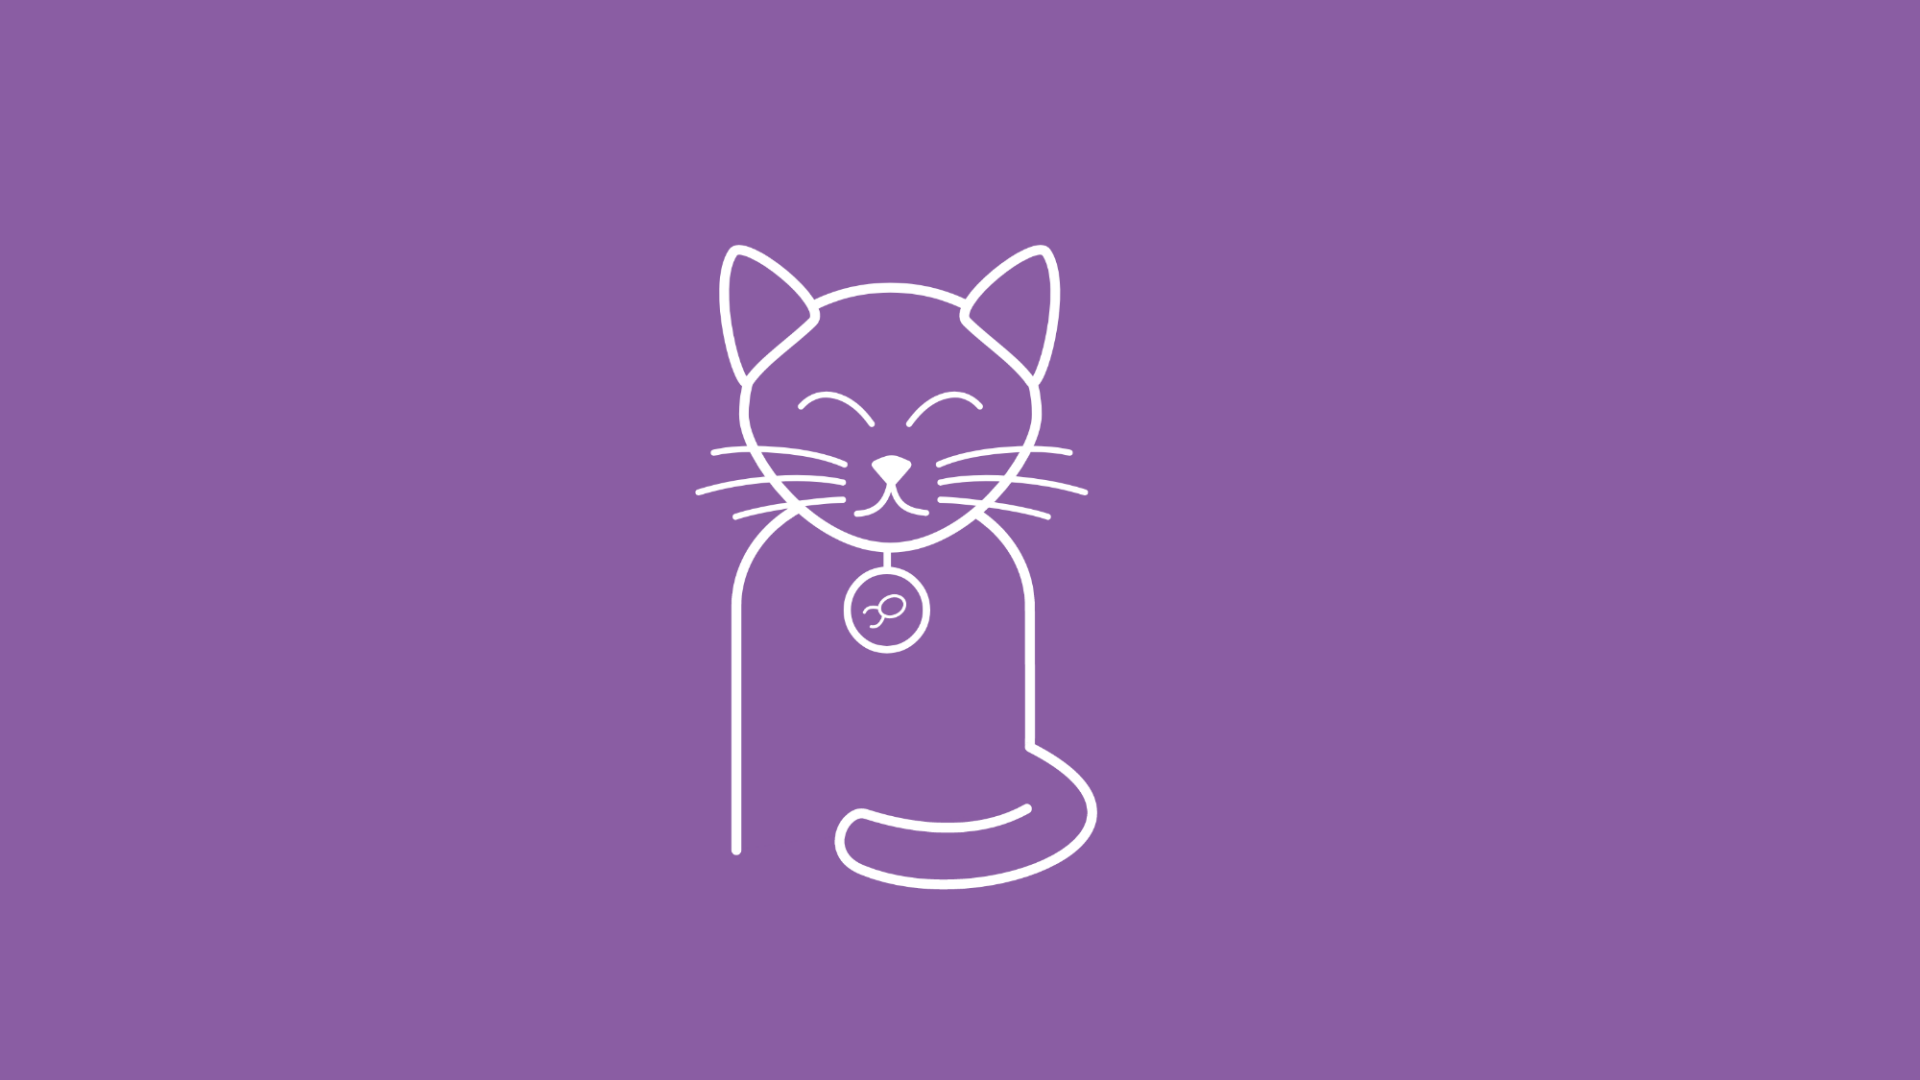 Es ist eine Katze mit Flohhalsband zu sehen, das Katzenflöhen vorbeugen soll.